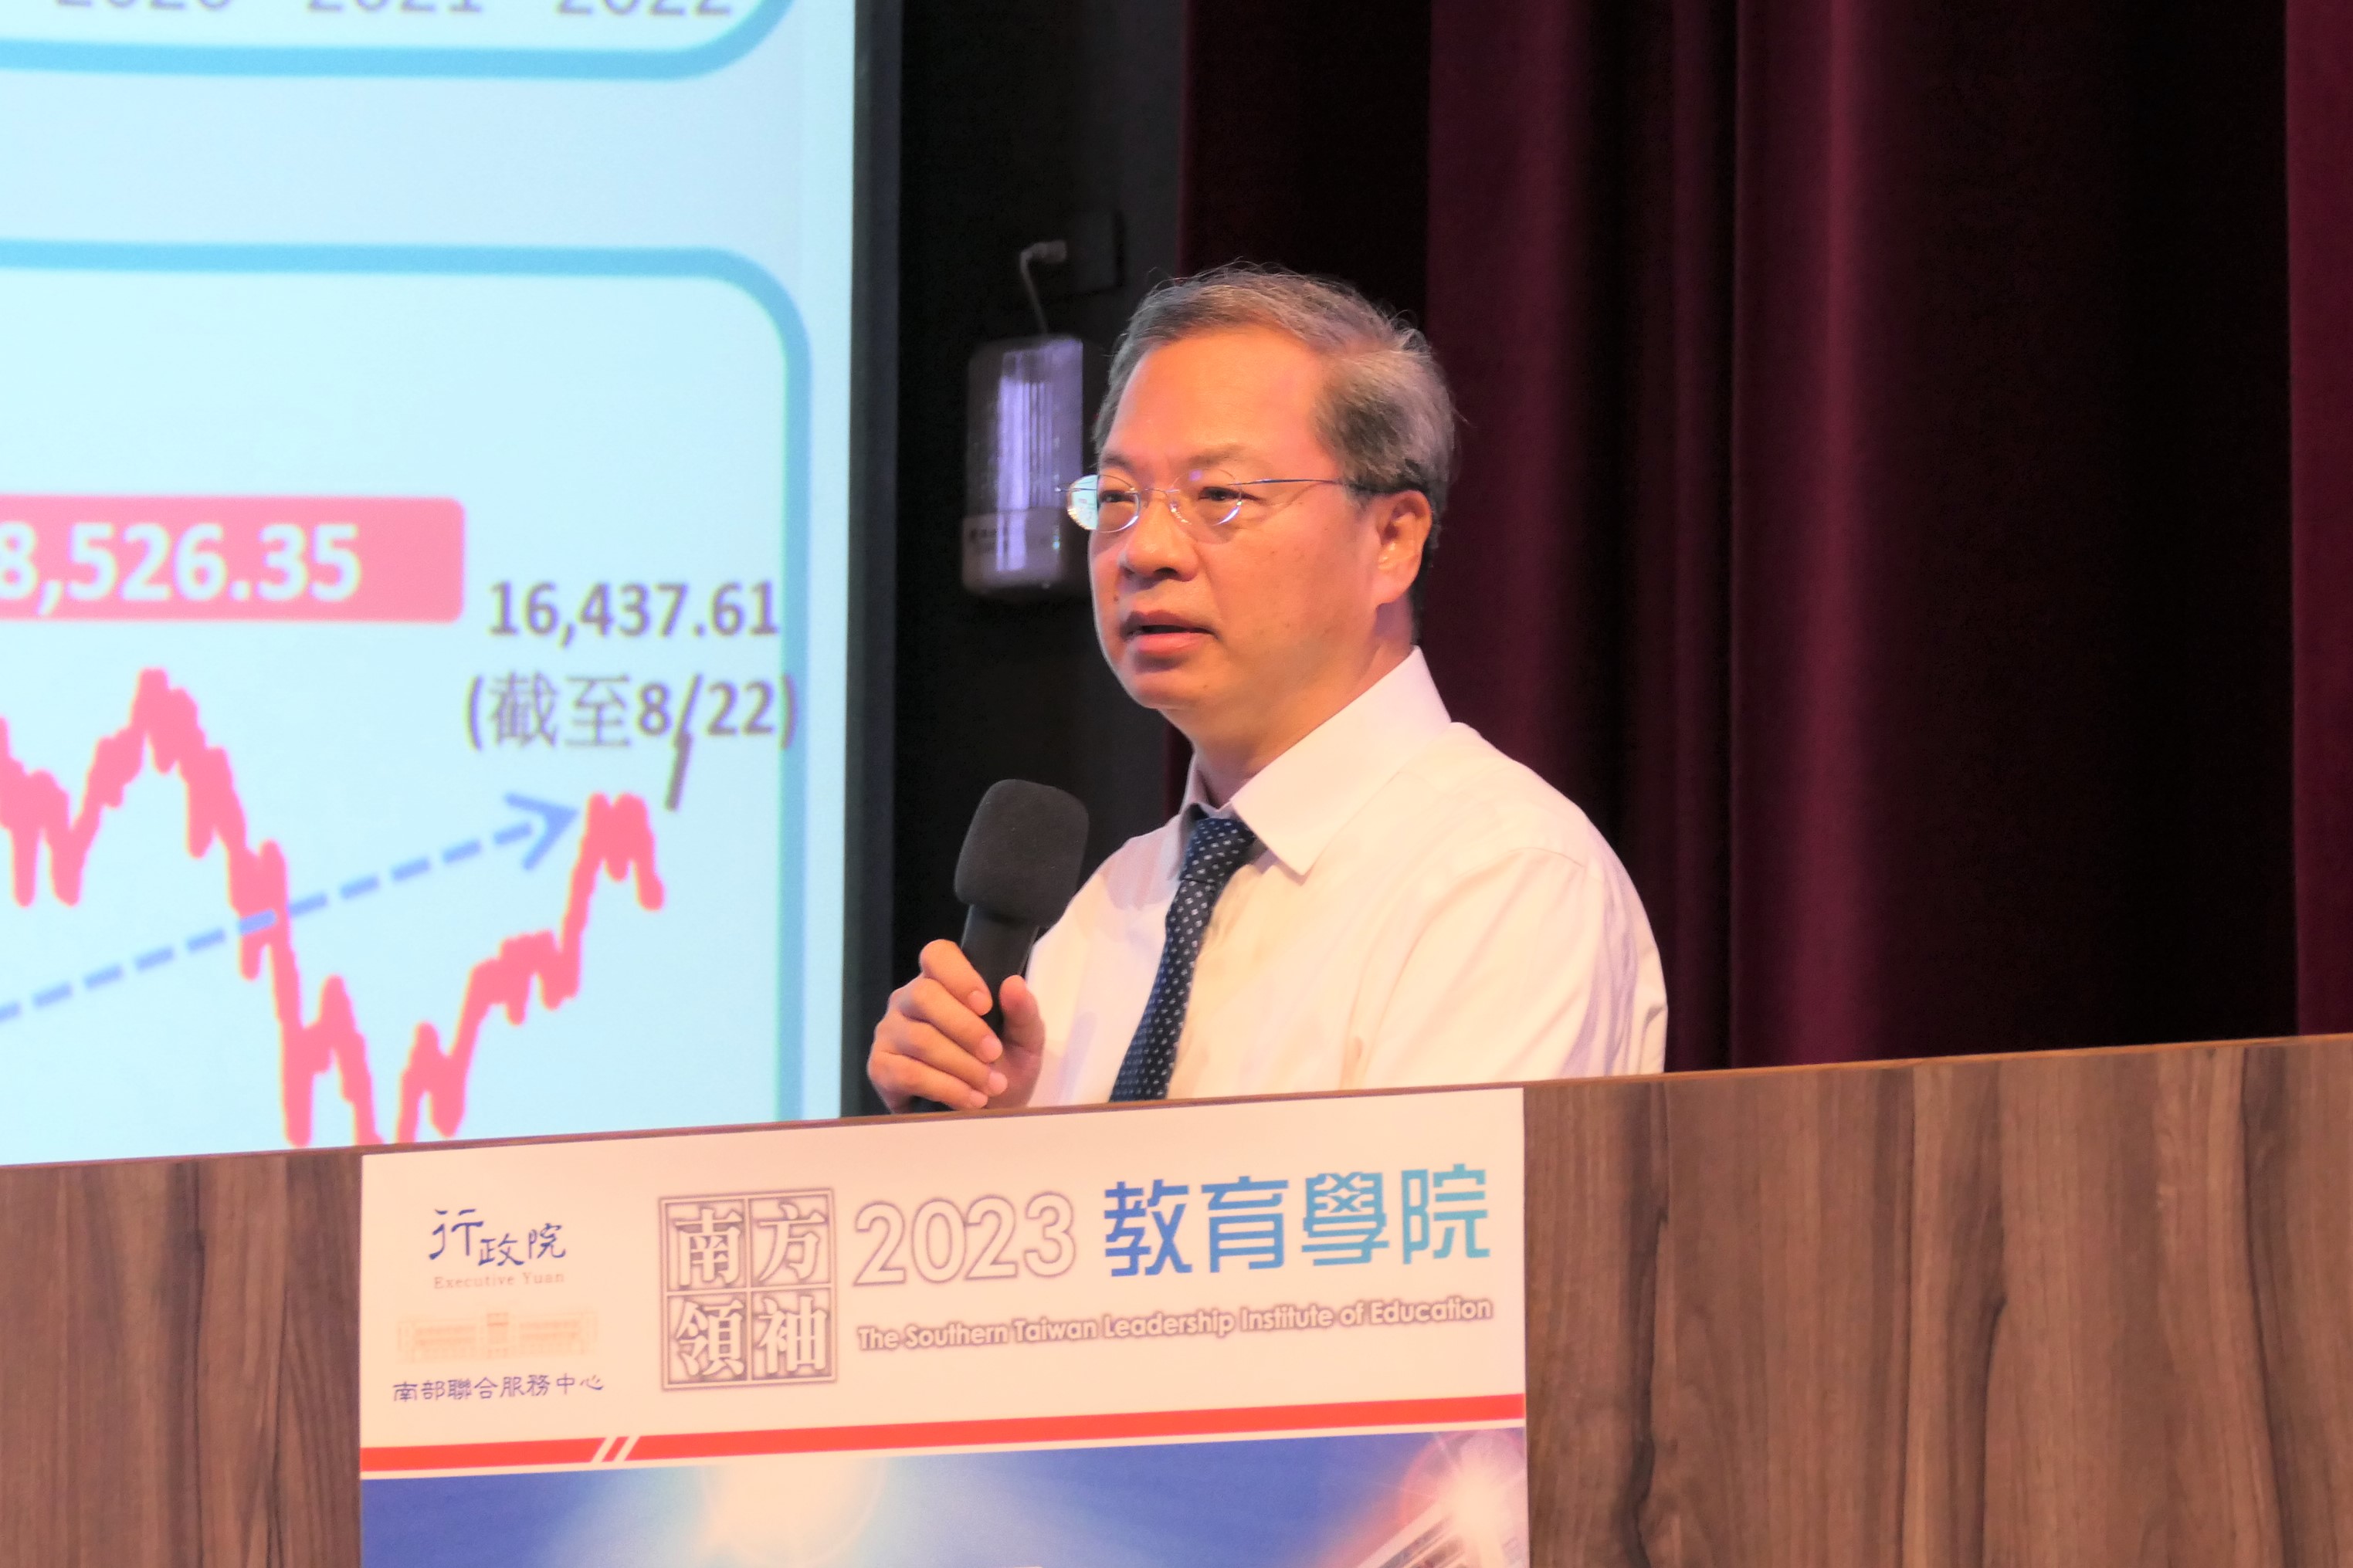 龔明鑫主委出席南方領袖教育學院 主講「從全球經濟局勢看台灣展望」